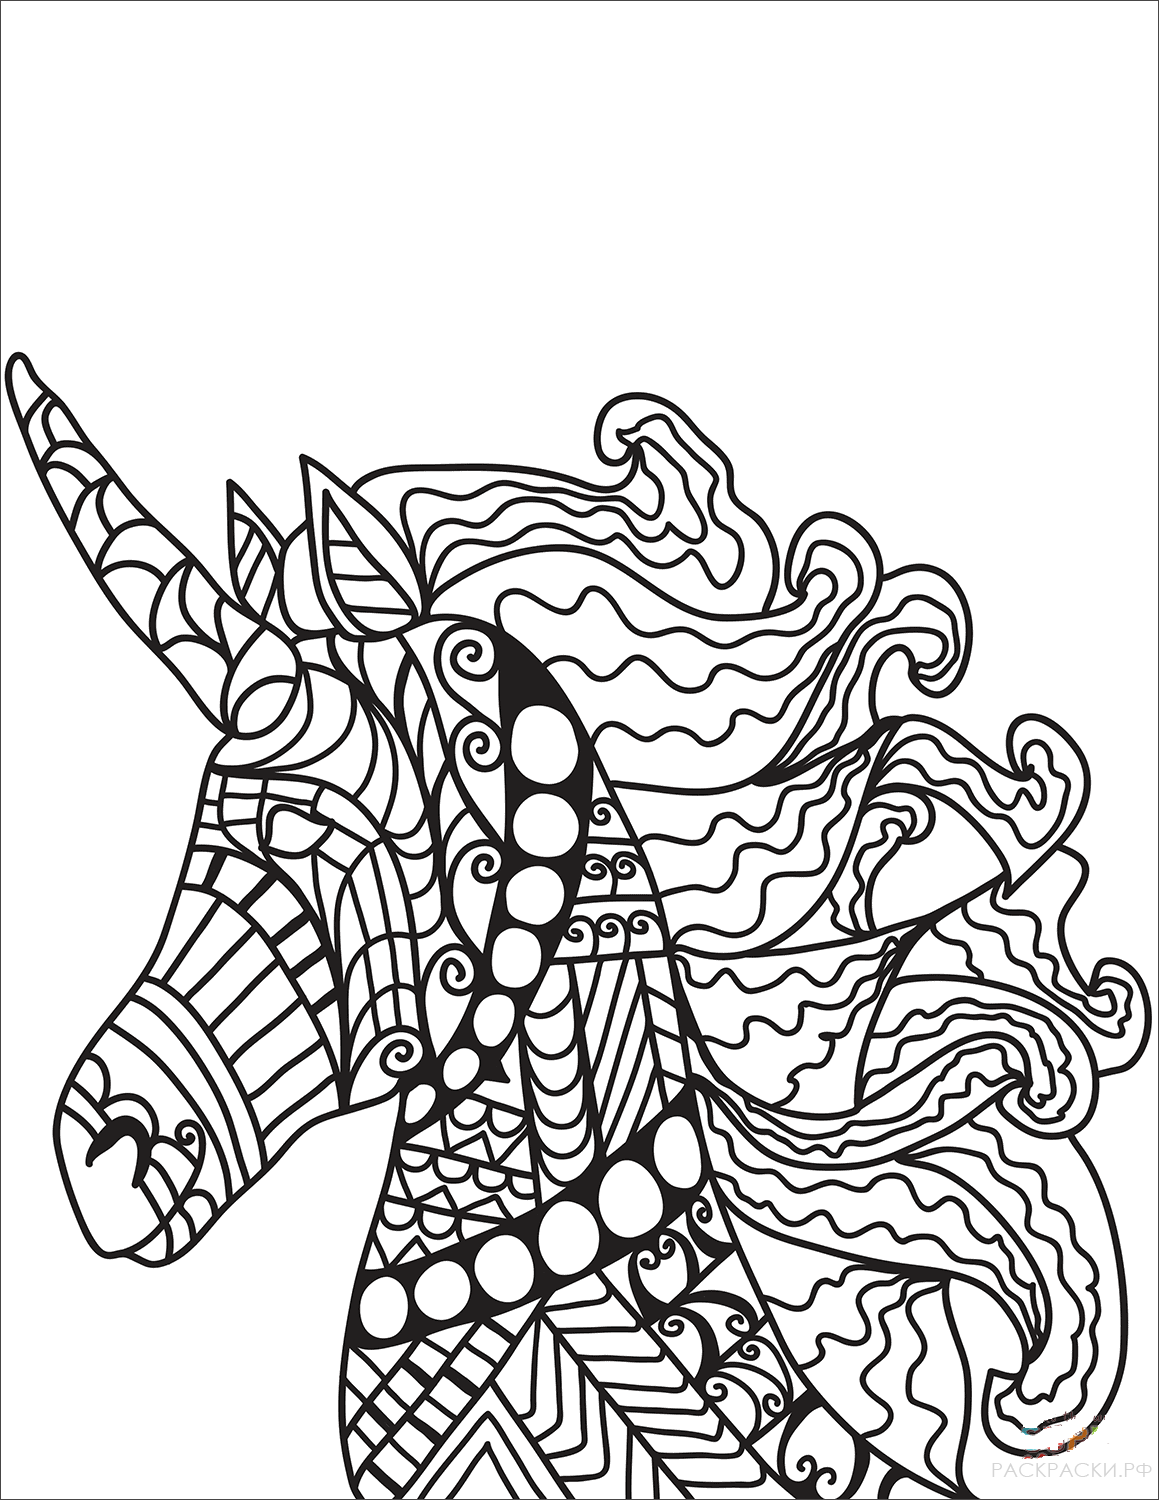 Раскраска Единорог в технике дзентангл